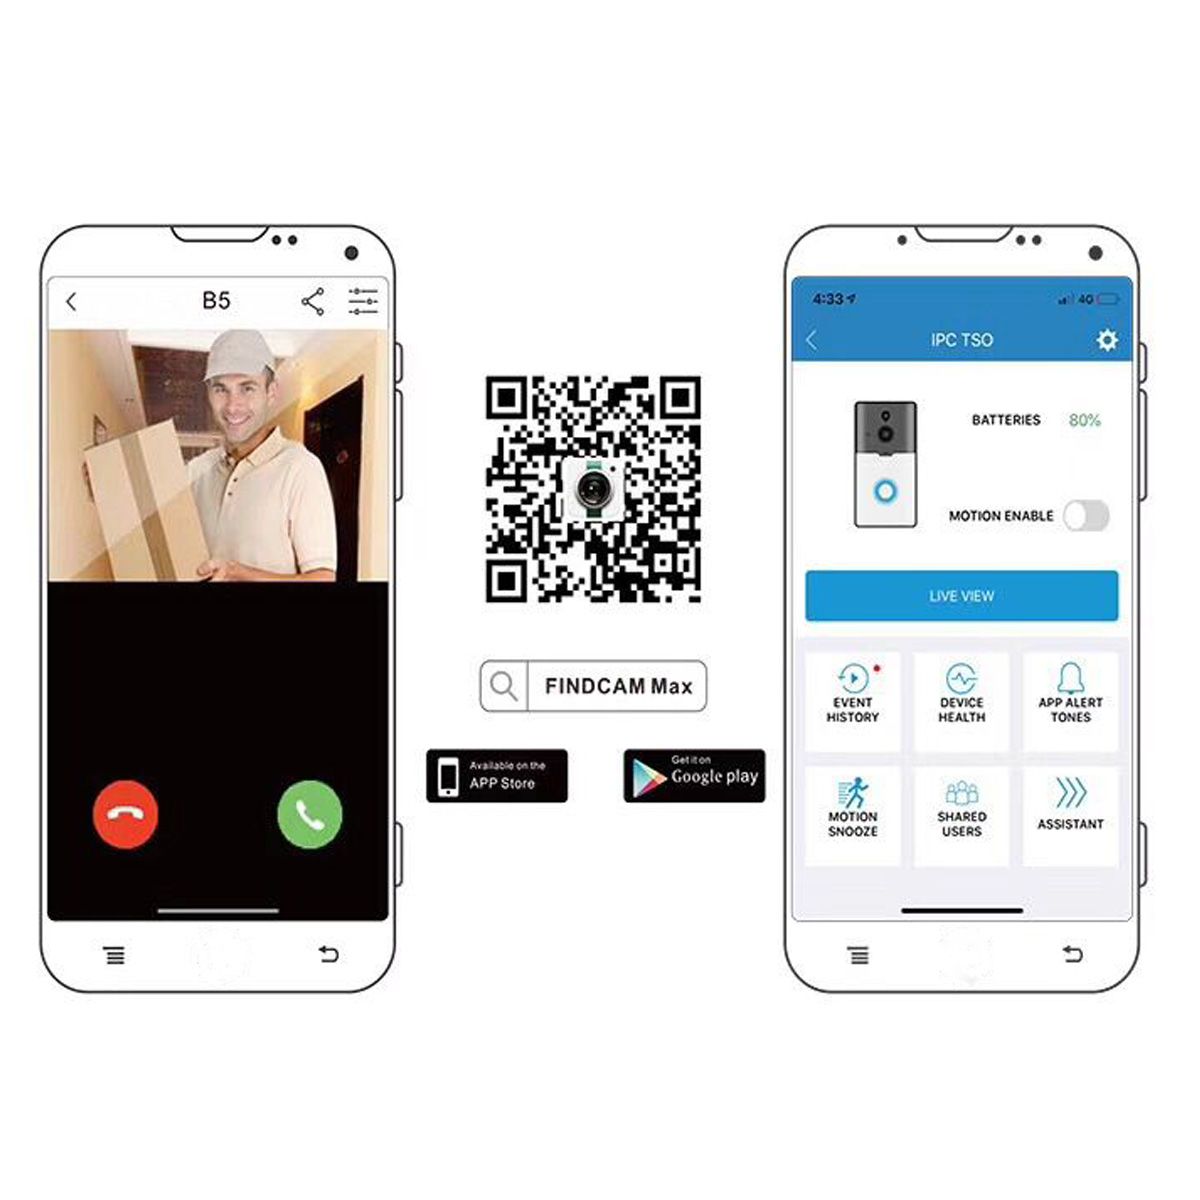 Smart-Doorbell-WiFi-Wireless-1080P-HD-Video-Camera-128G-Two-Way-Talk-Door-Bell-with-Batteries-1412979